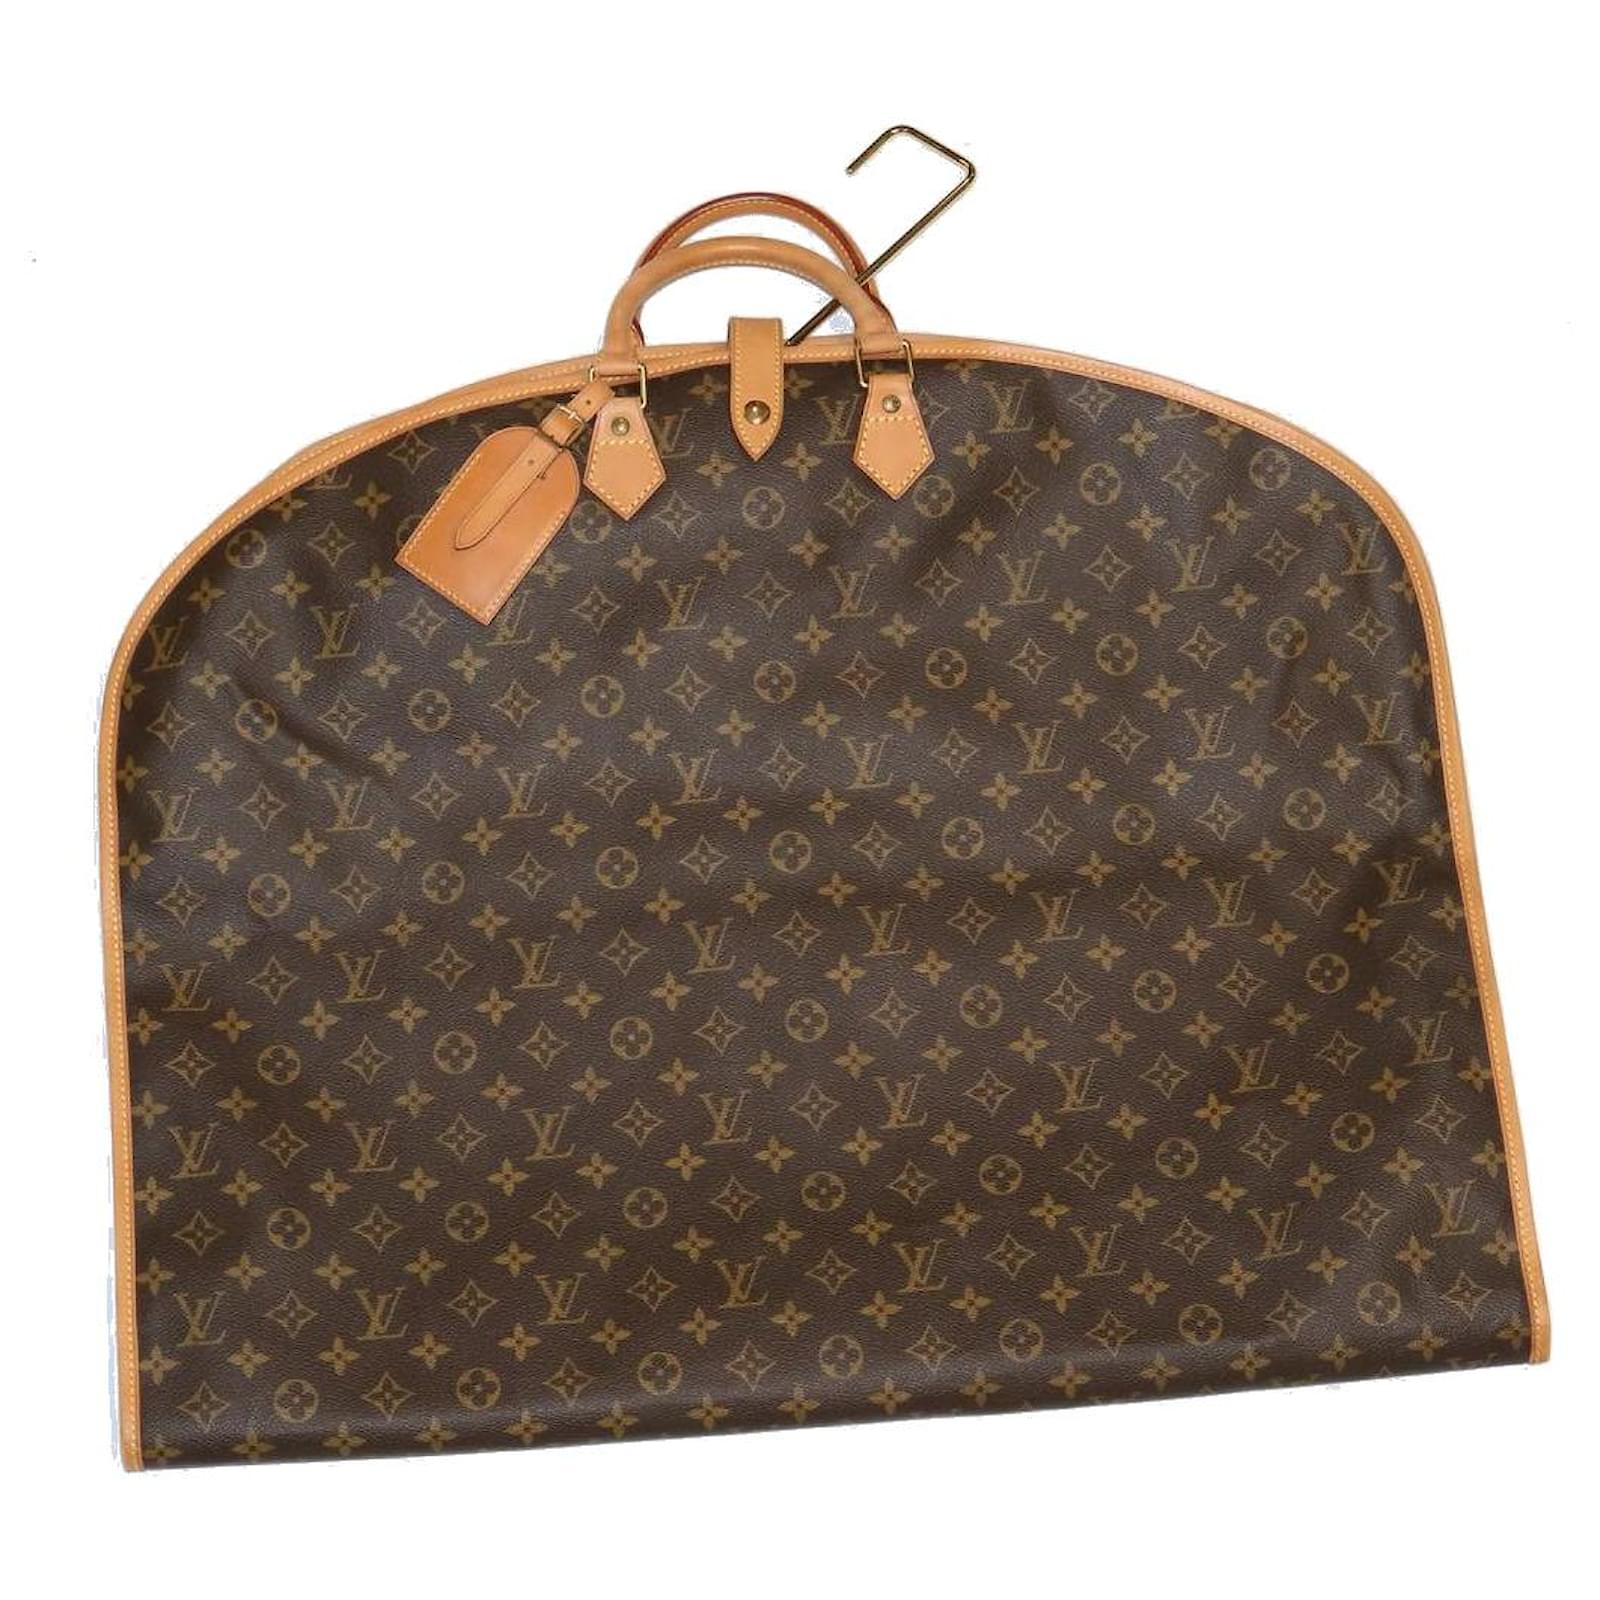 LV Louis Vuitton Suit Cover Bag